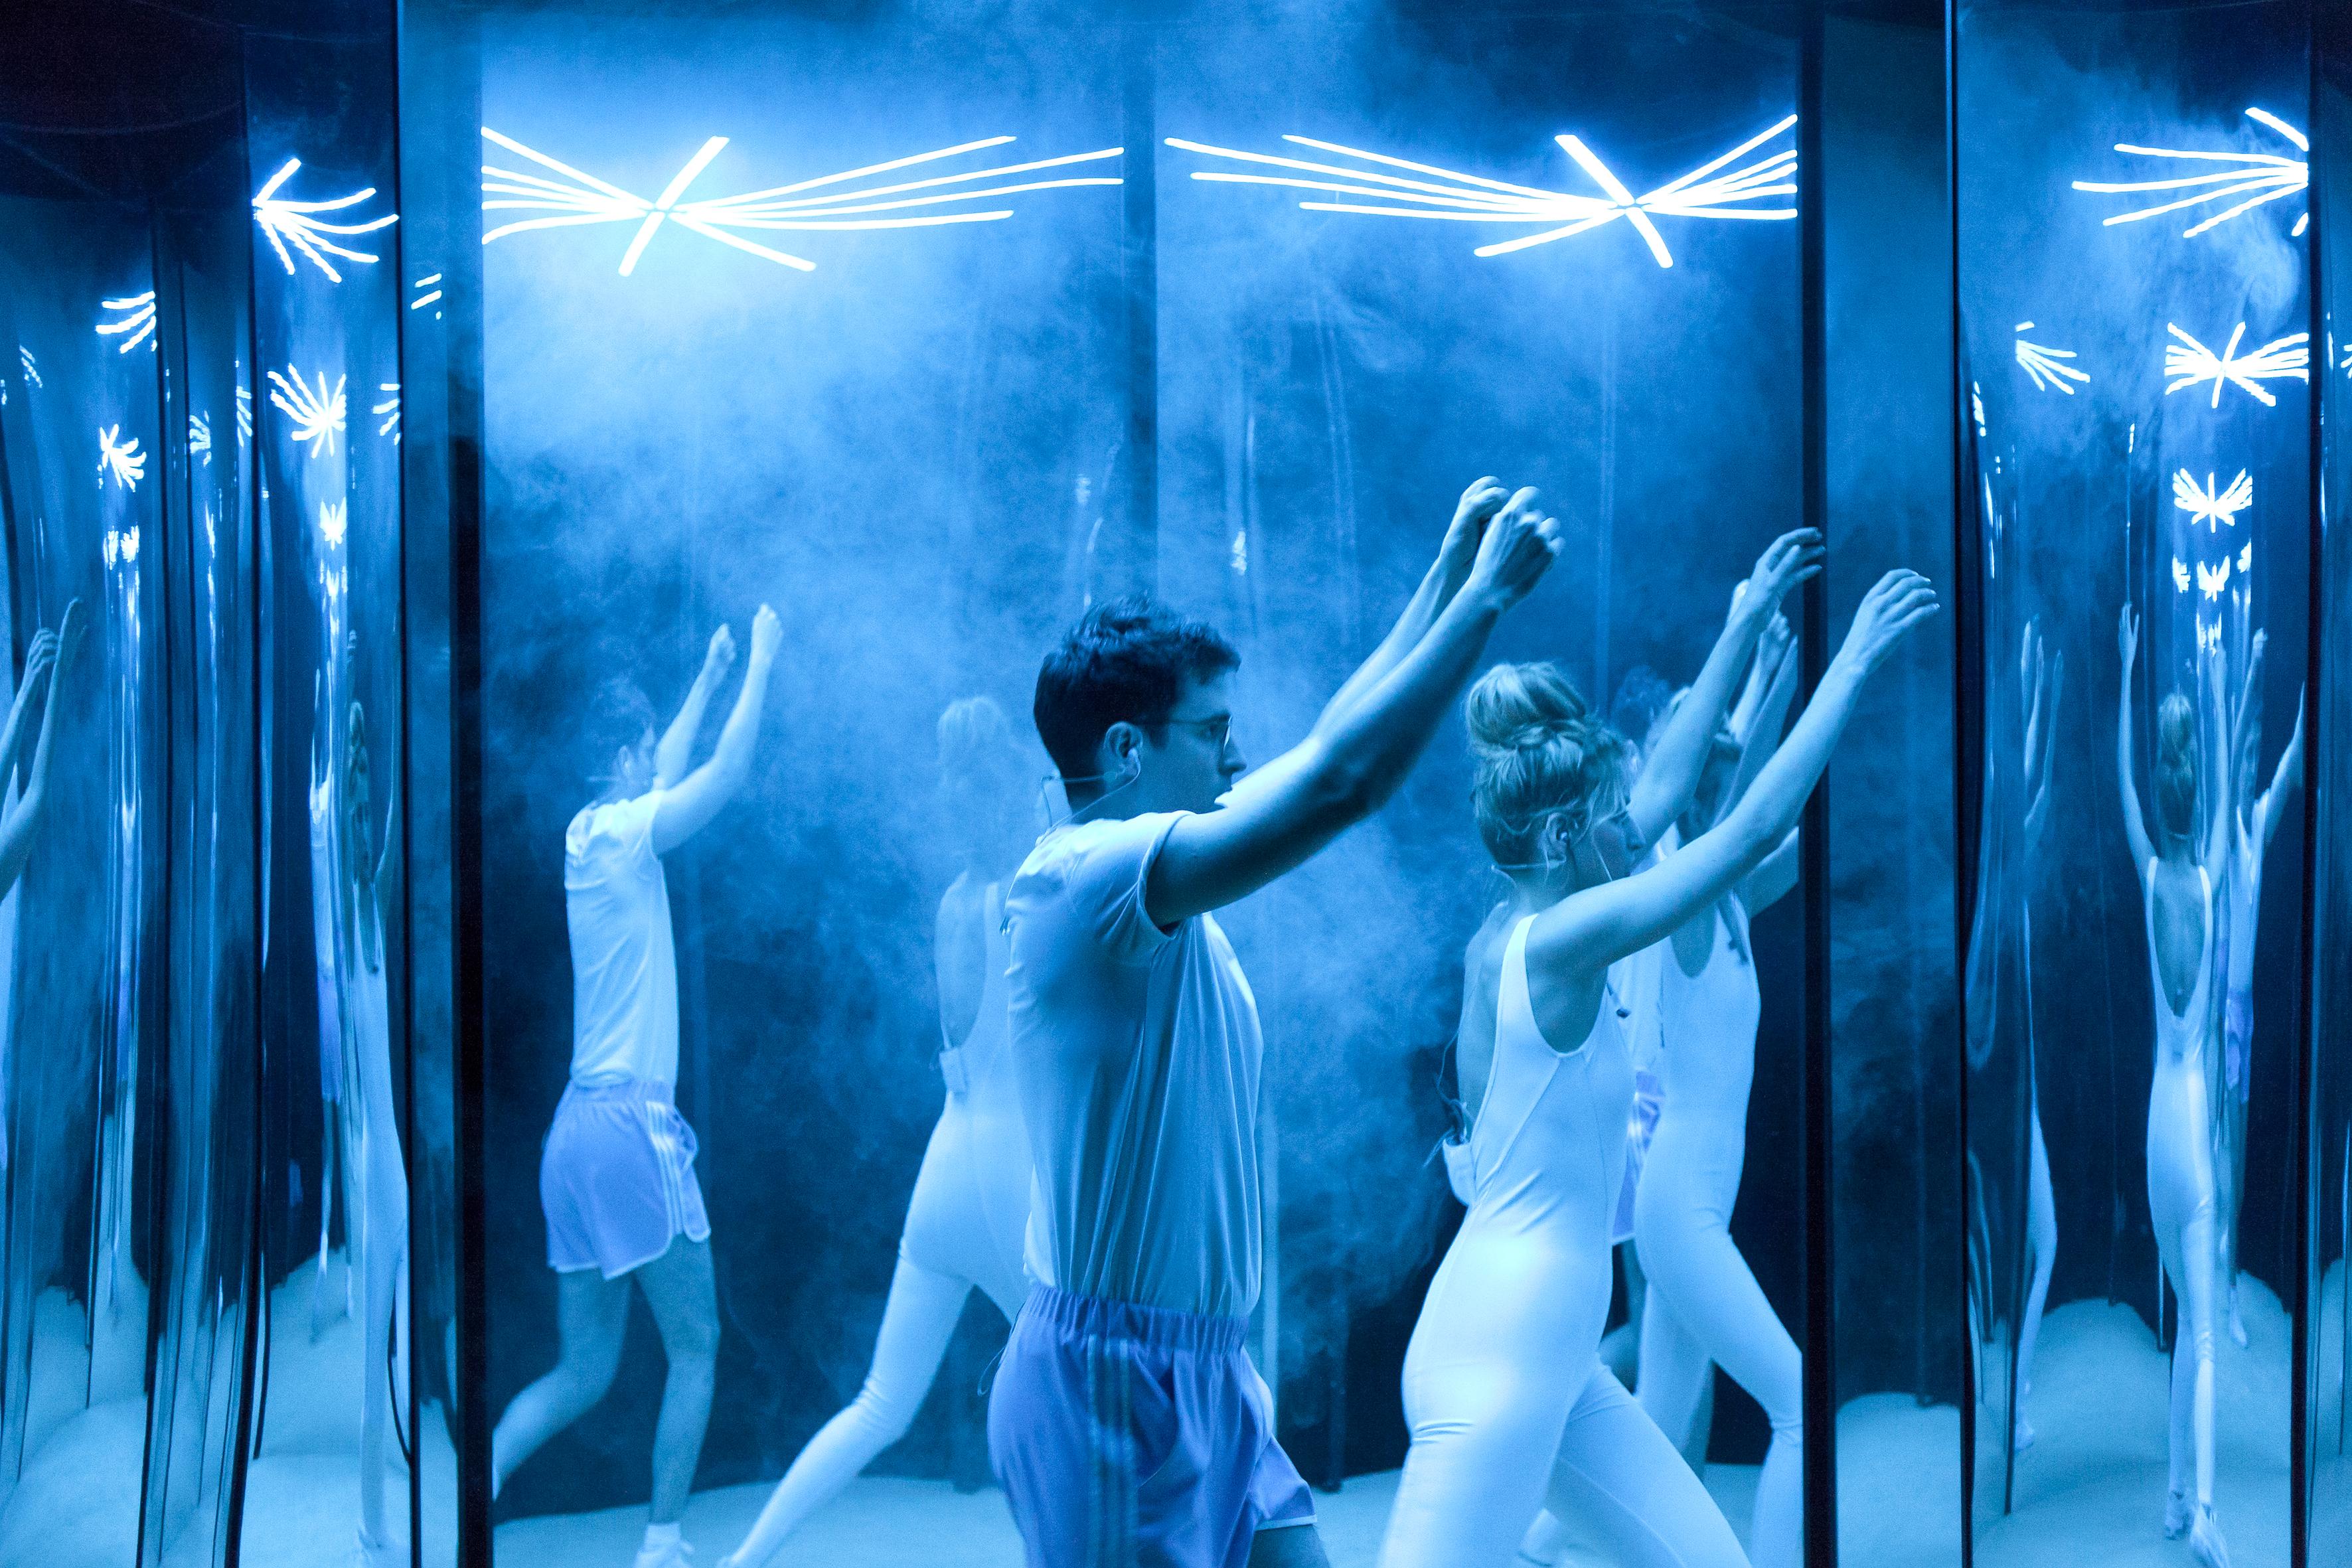 Image du spectacle Self Help, une pièce de Igor Cardellini, Rébecca Balestra, Tomas Gonzalez. [K7 Productions & la FUR Cie - Dorothée Thebert]